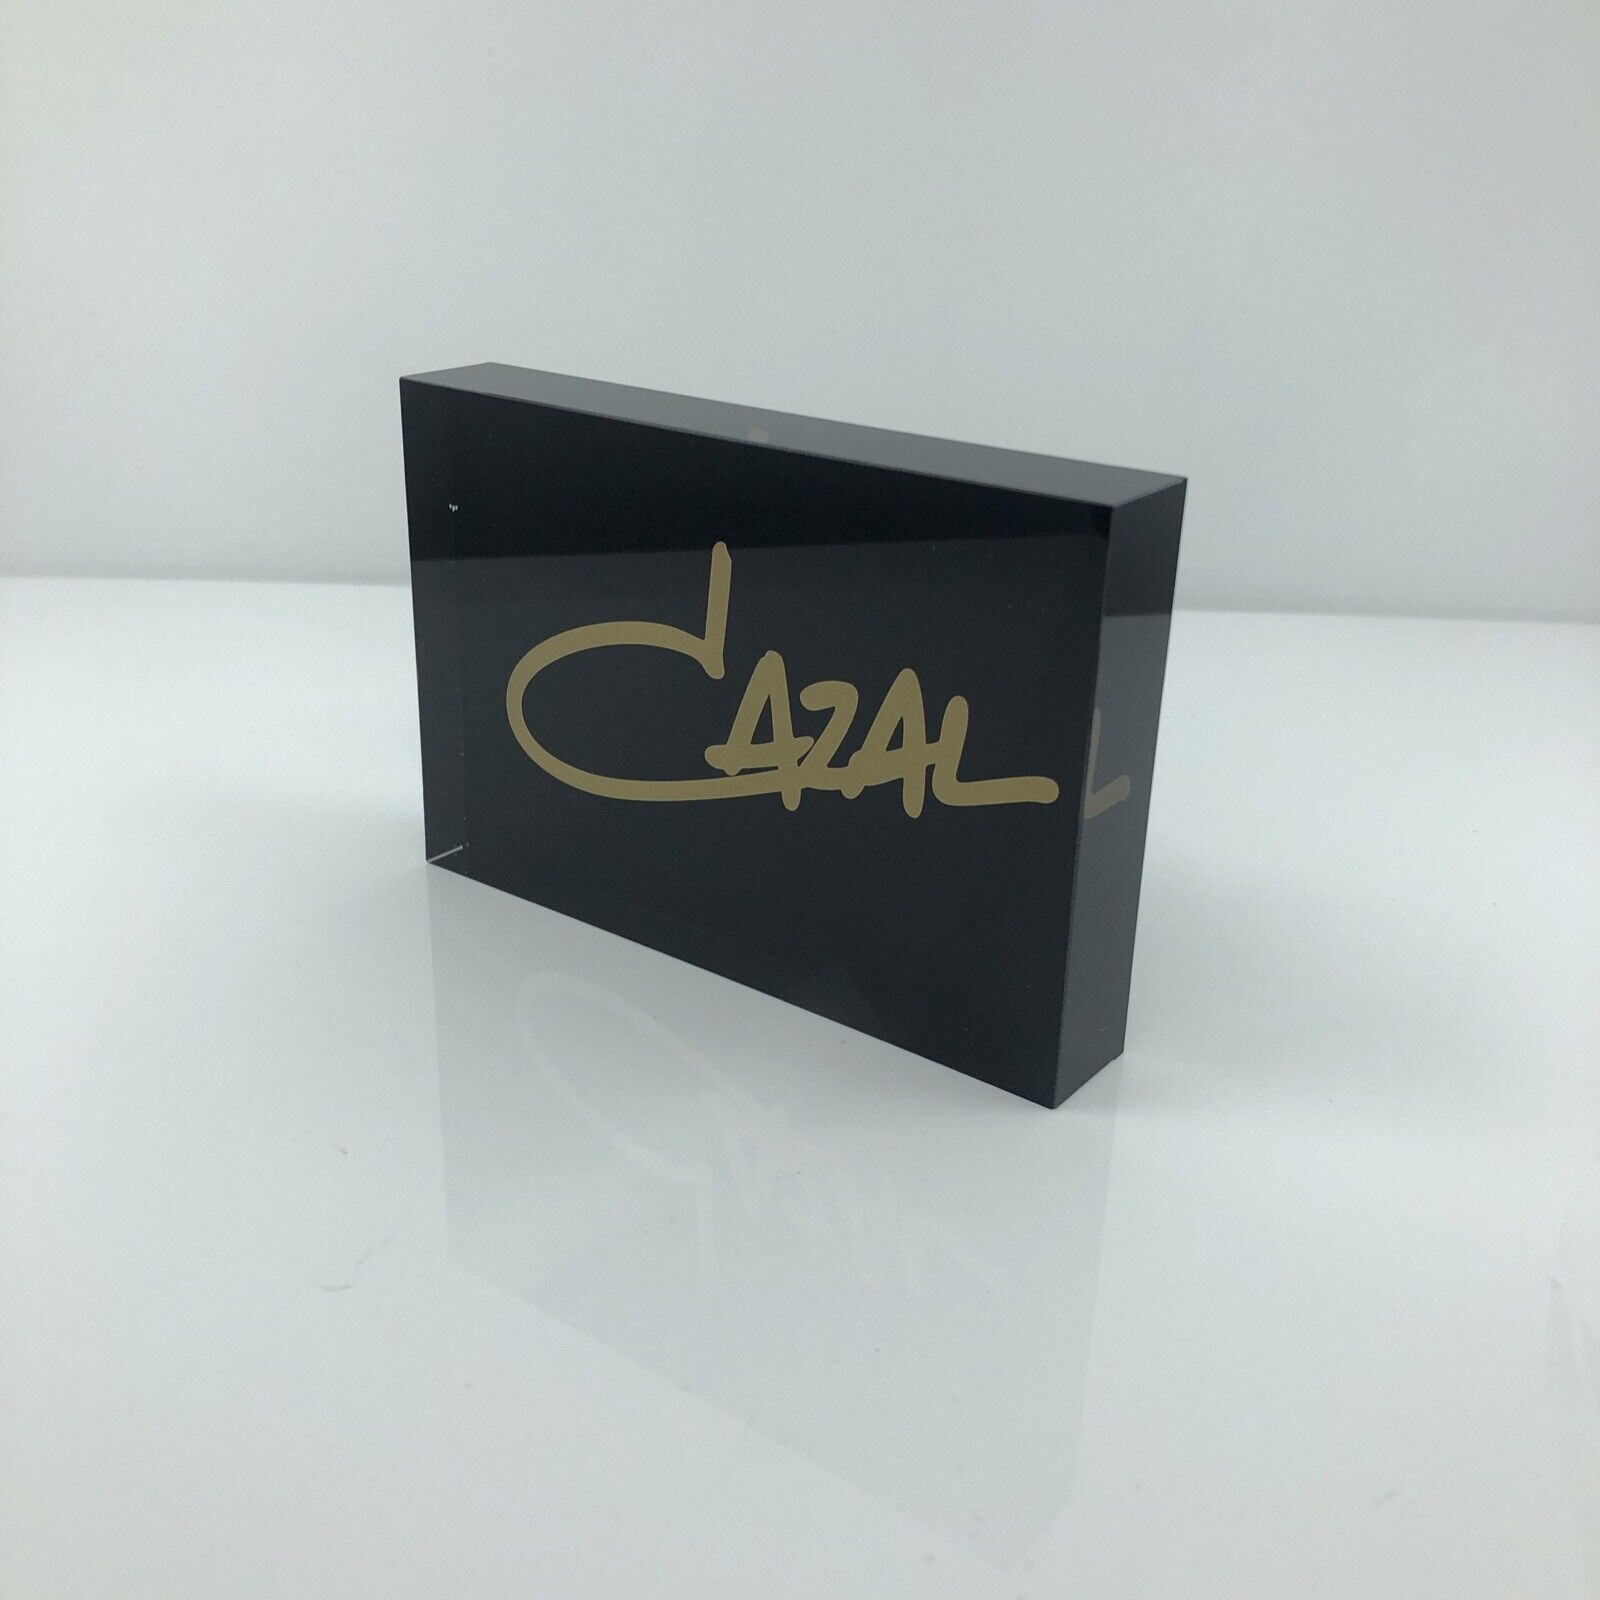 New CAZAL LOGO DISPLAY MODEL Black & Gold Display LOGO SIGN EYEWEAR Dealer Logo